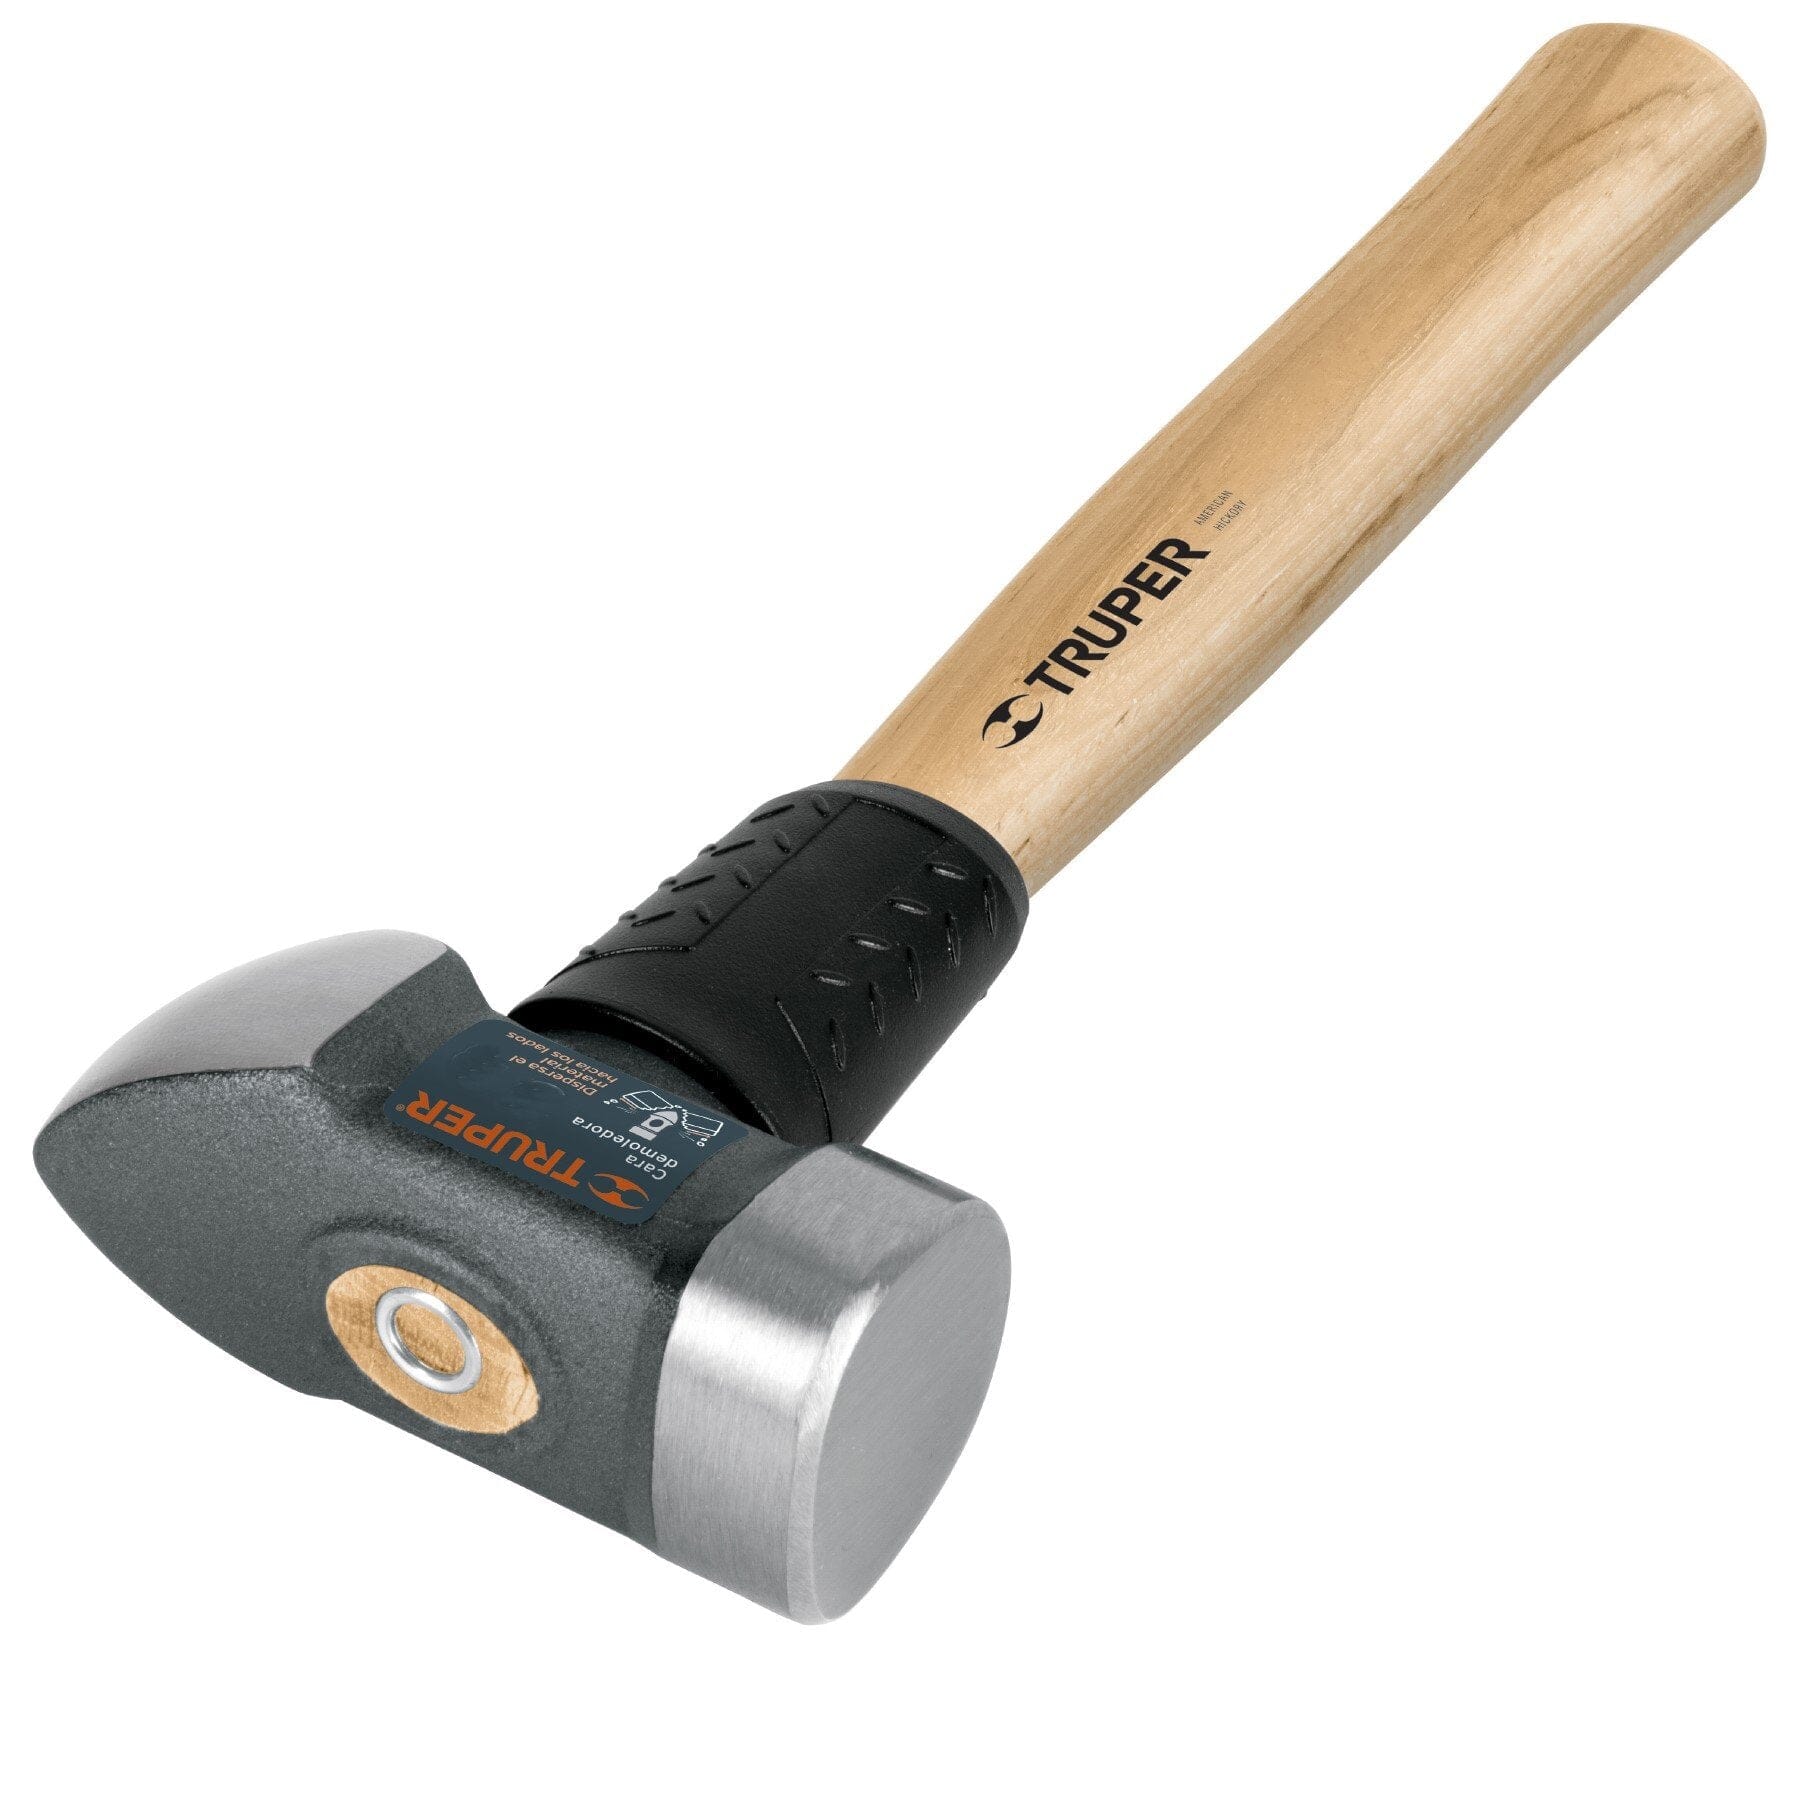 Truper Demolition Hammer with 30cm Wood Handle Large Face 4lb